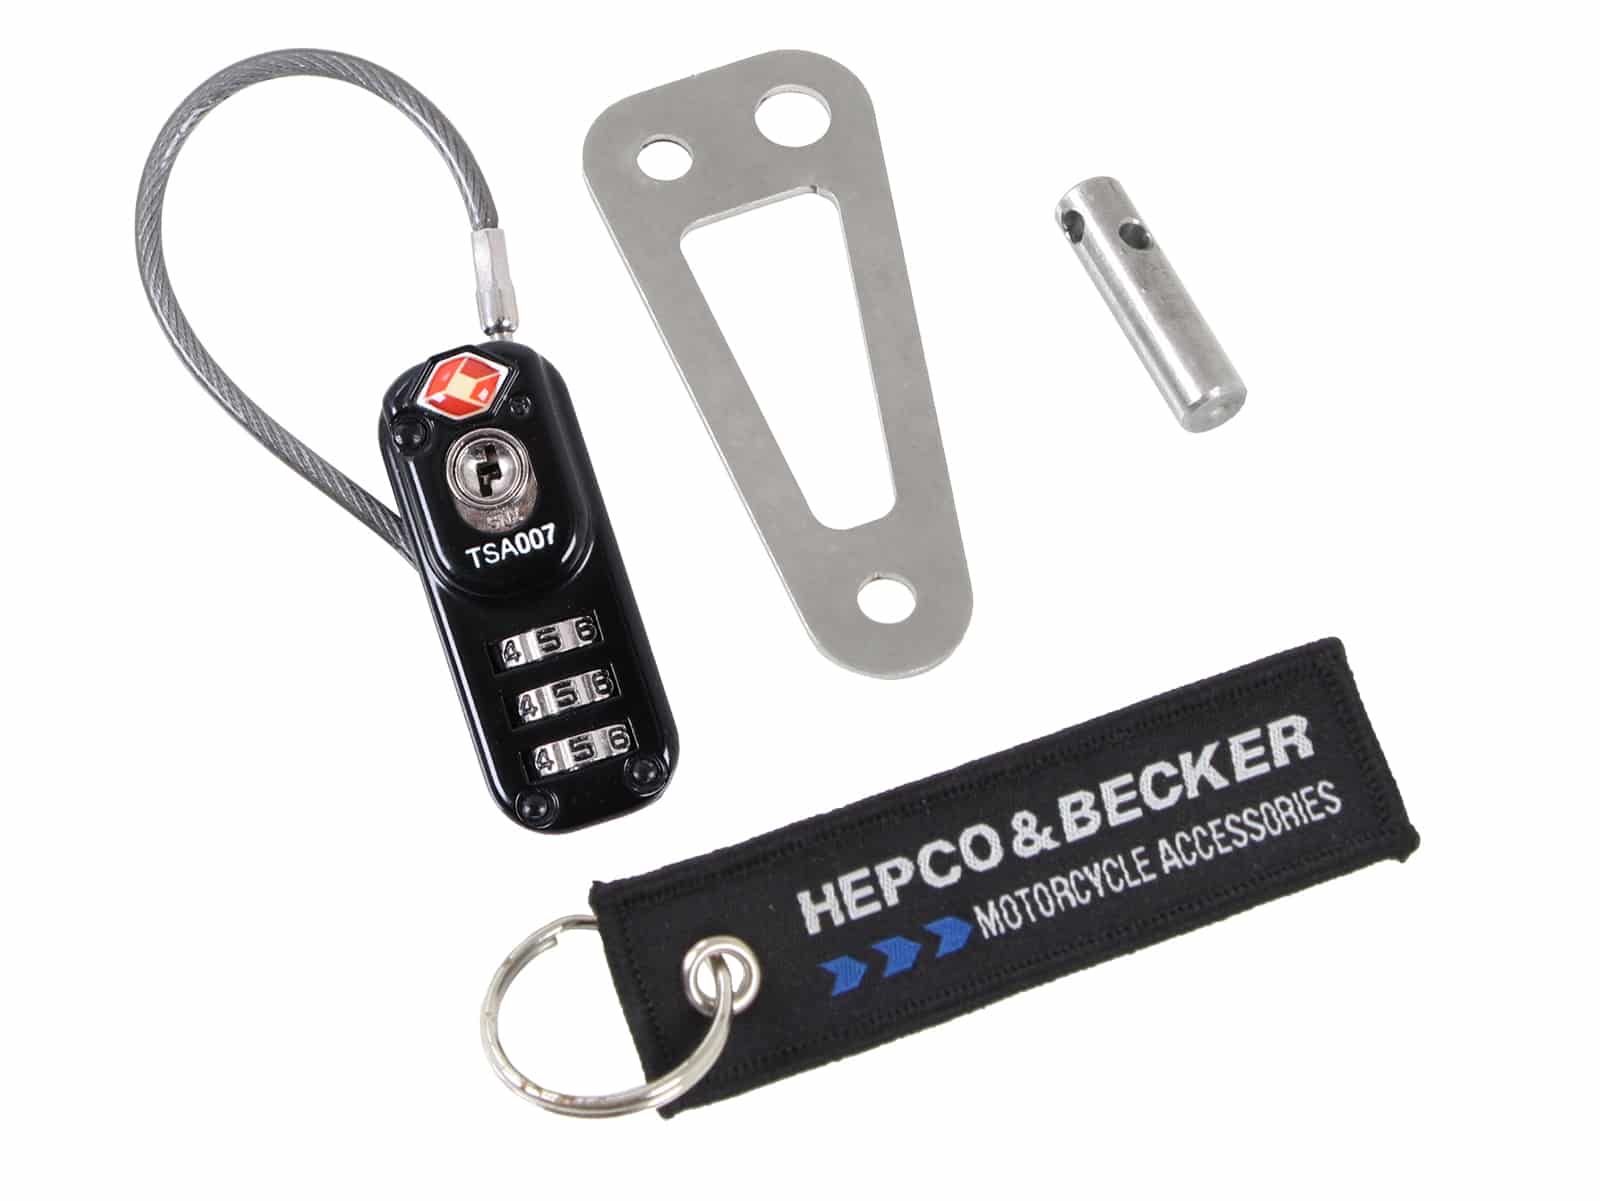 Diebstahlsicherung für Hepco&Becker Lock-it/Basic Tankrucksäcke und Hecktaschen